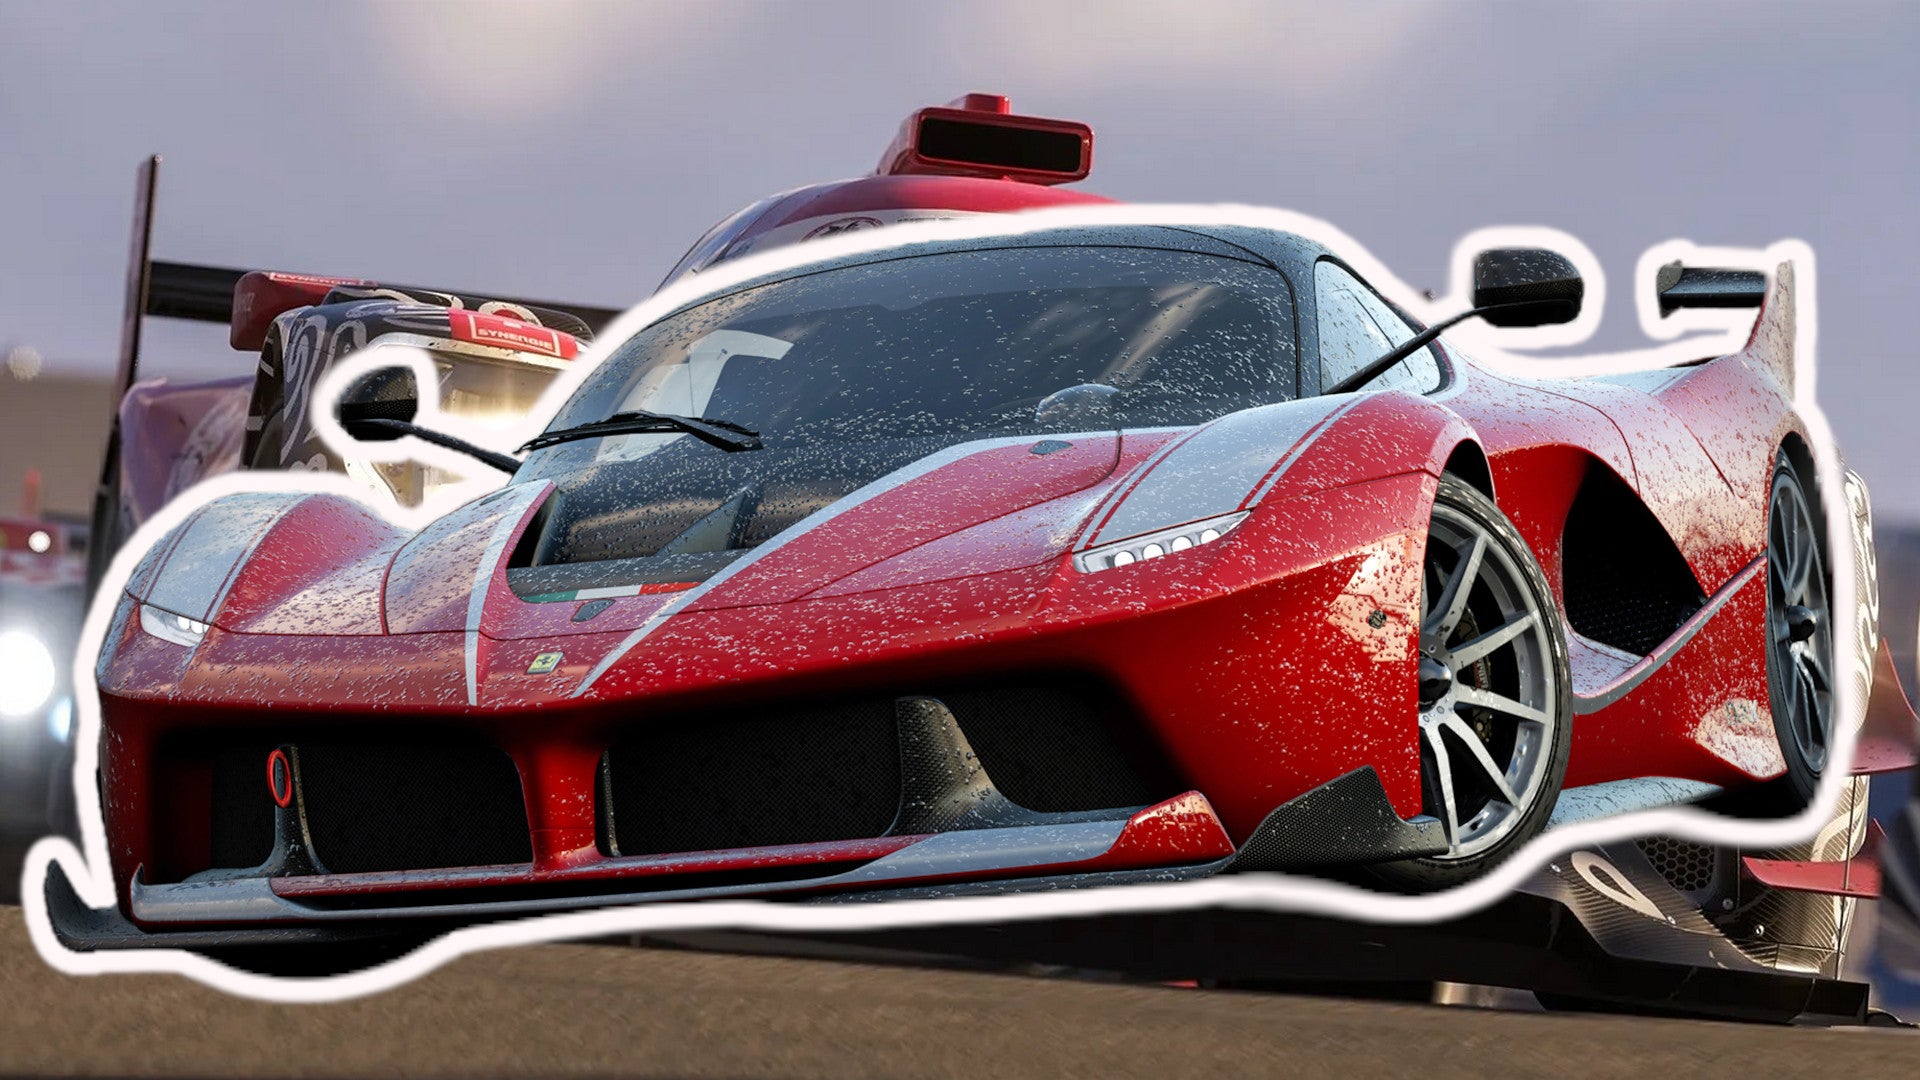 Forza-Motorsport-D-rft-ihr-erst-Ende-2023-rasen-Release-verz-gert-sich-angeblich